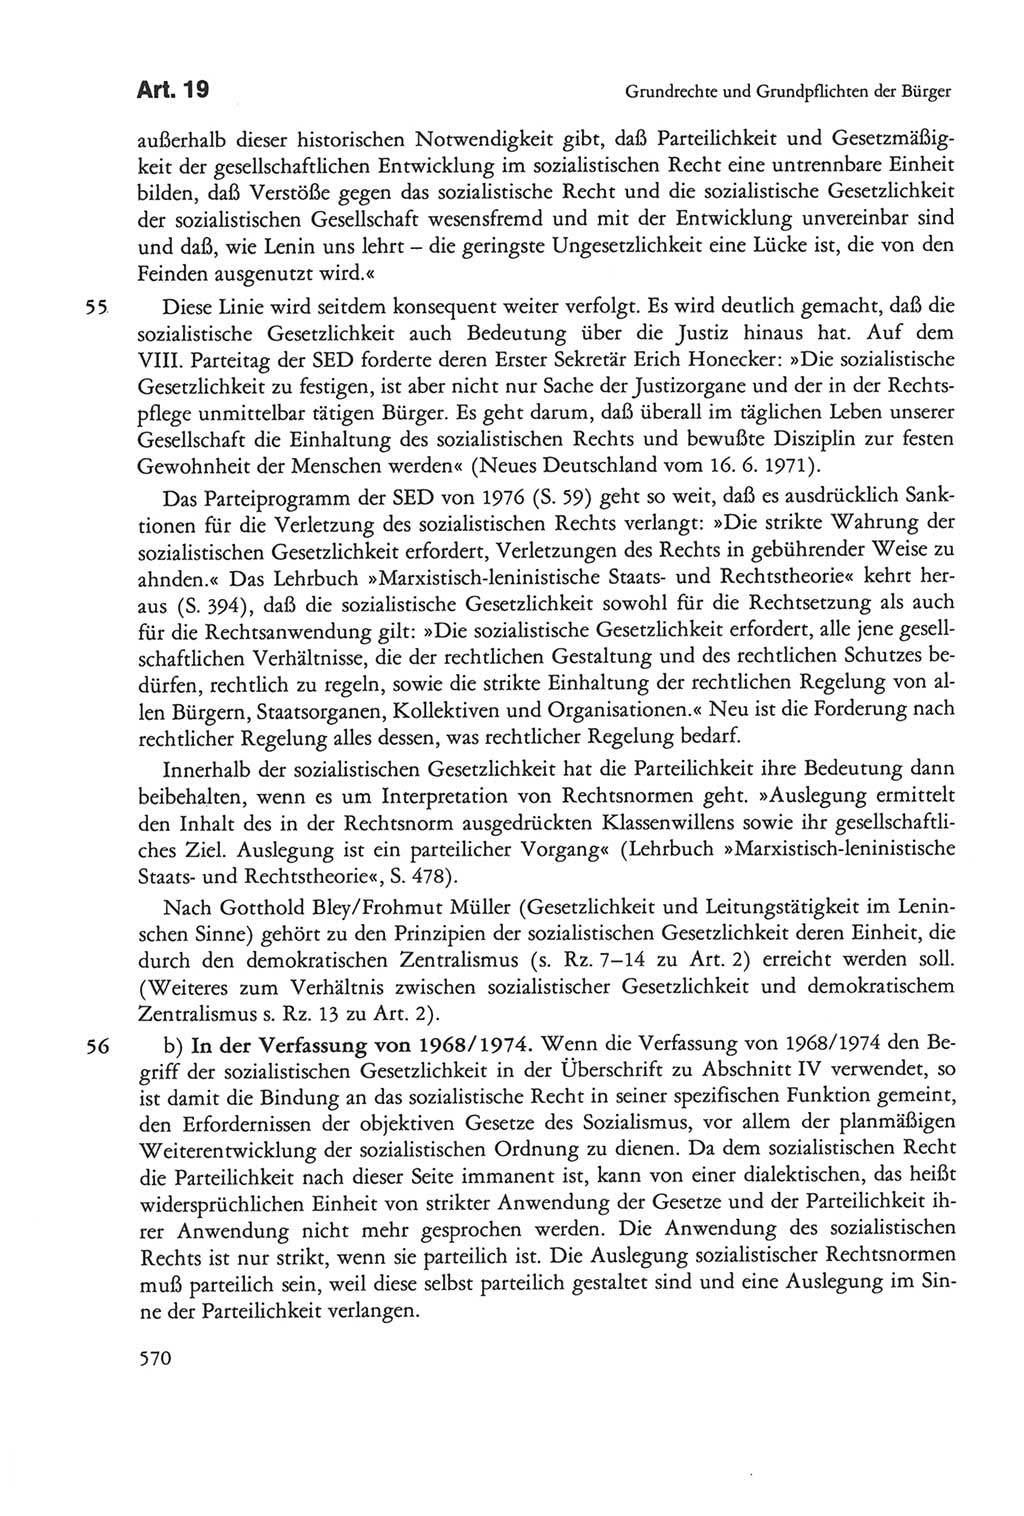 Die sozialistische Verfassung der Deutschen Demokratischen Republik (DDR), Kommentar 1982, Seite 570 (Soz. Verf. DDR Komm. 1982, S. 570)